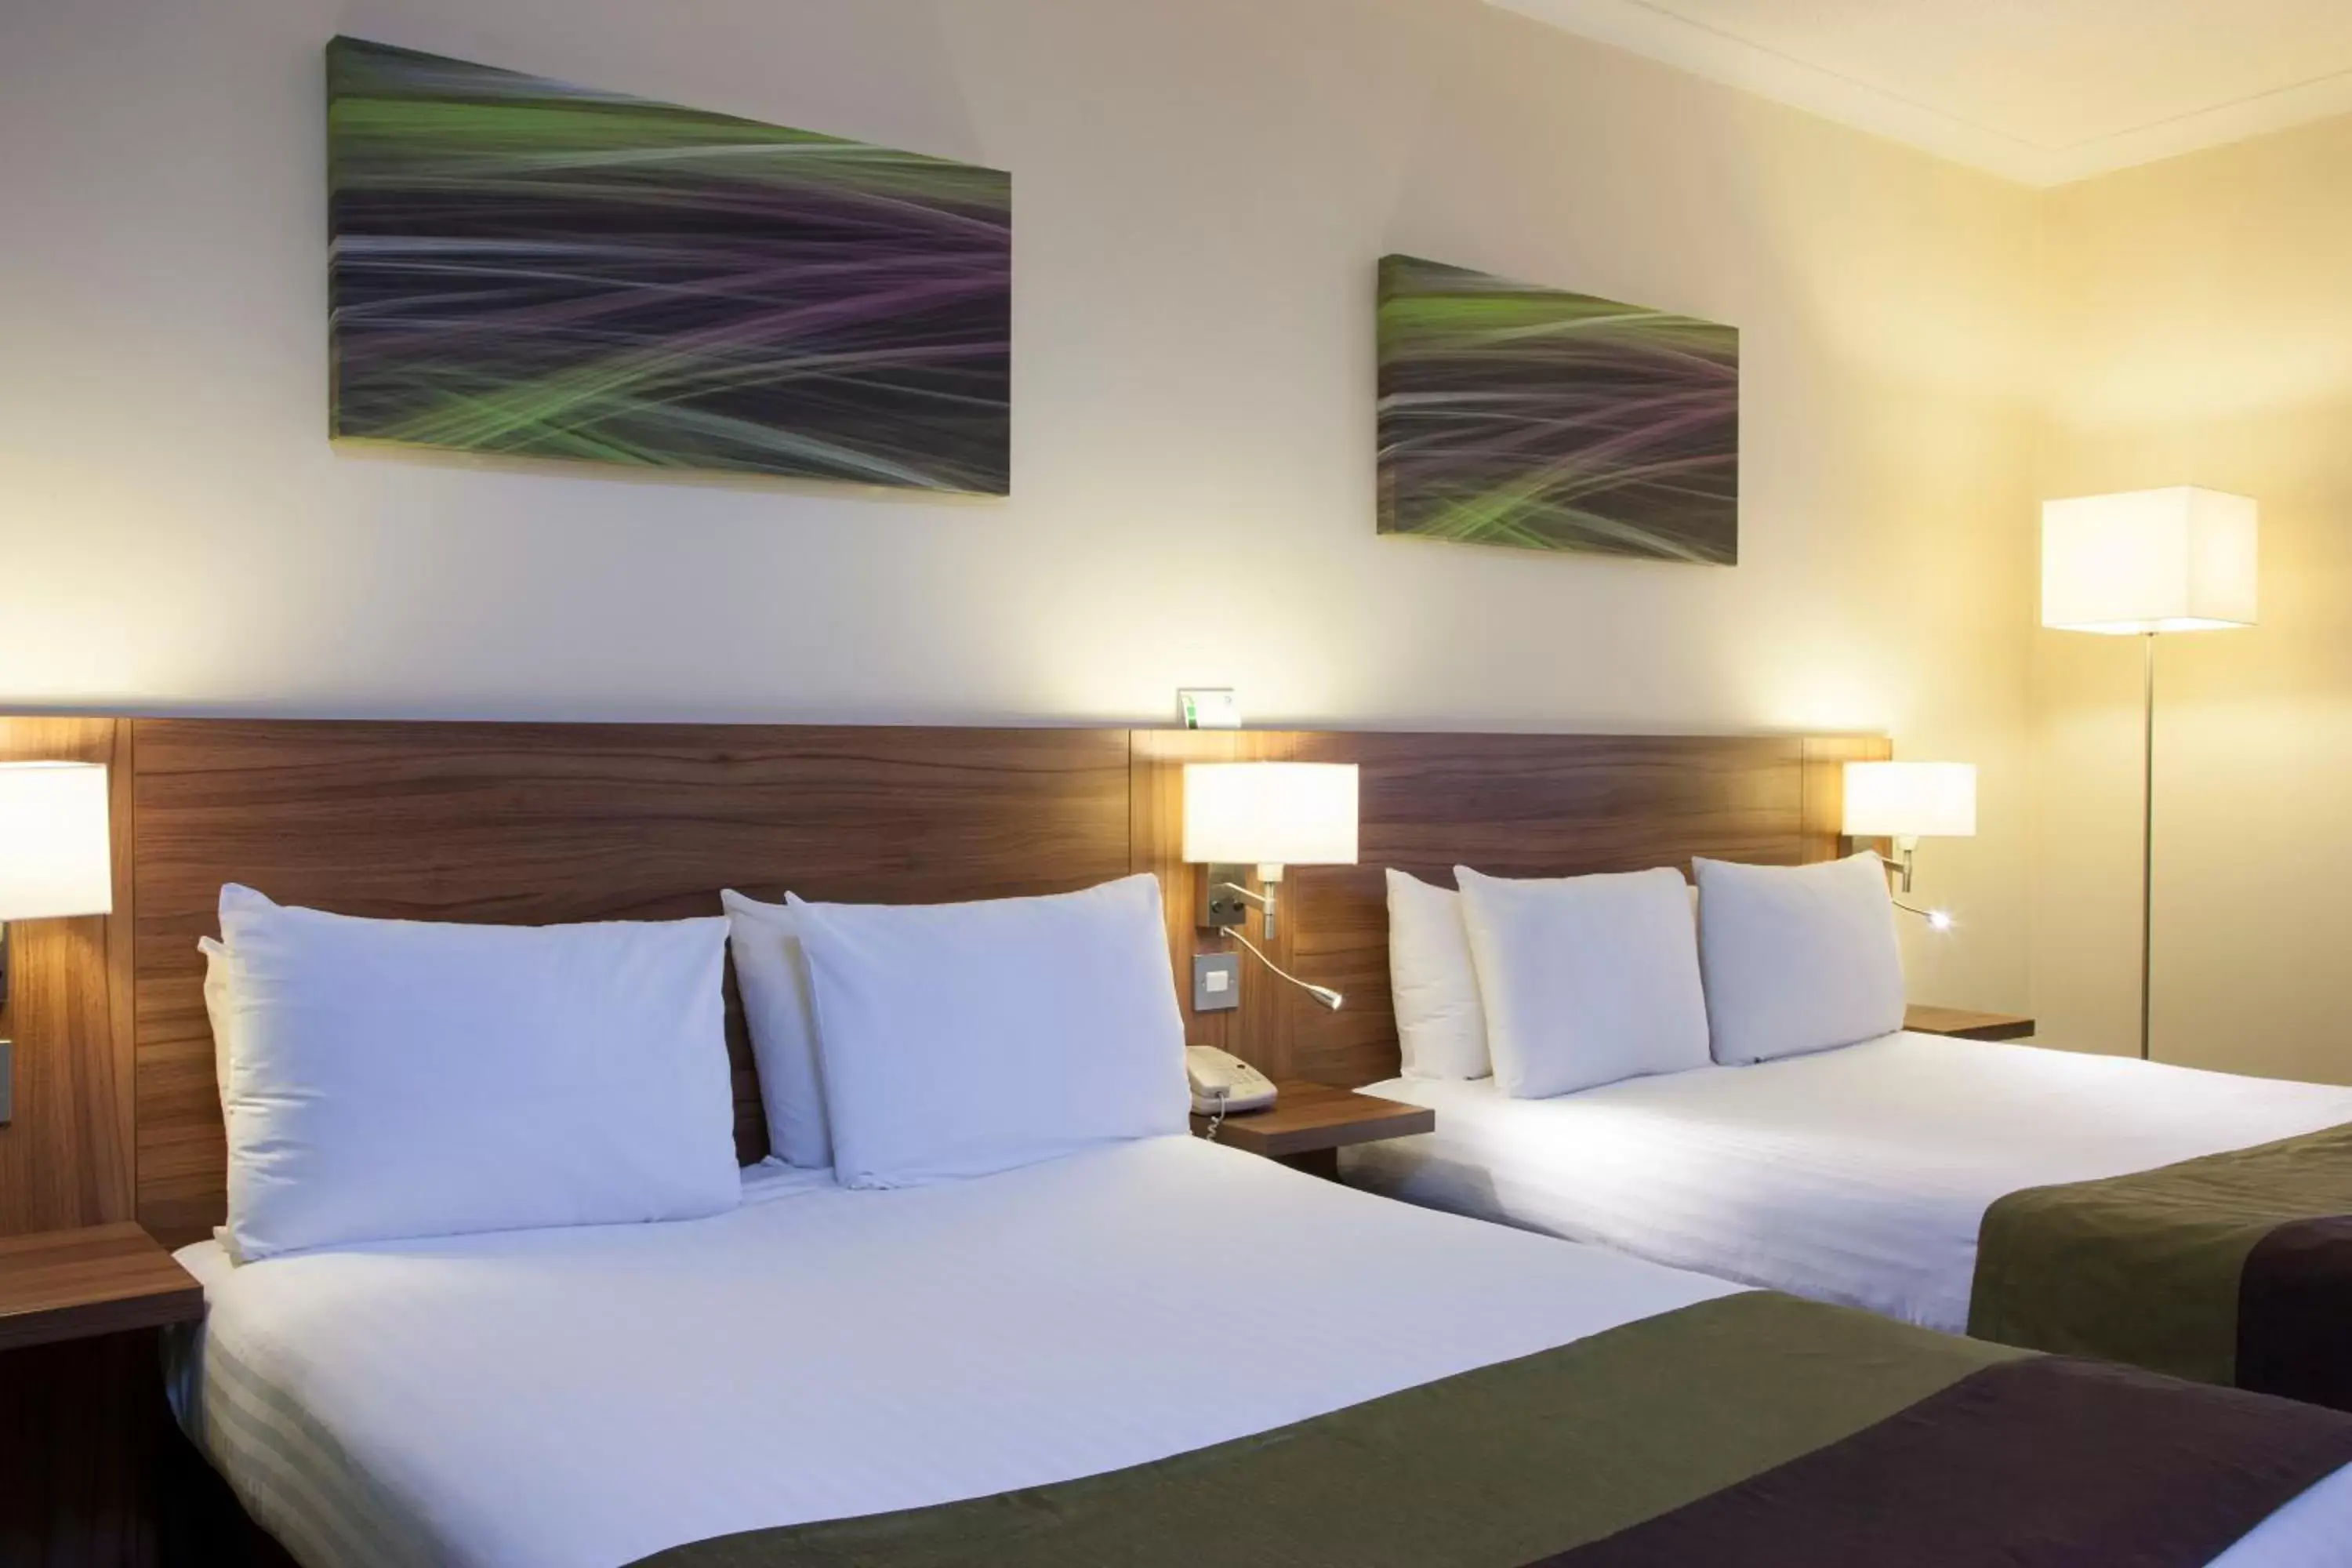 Bedroom, Room Photo in Holiday Inn Leamington Spa - Warwick, an IHG Hotel